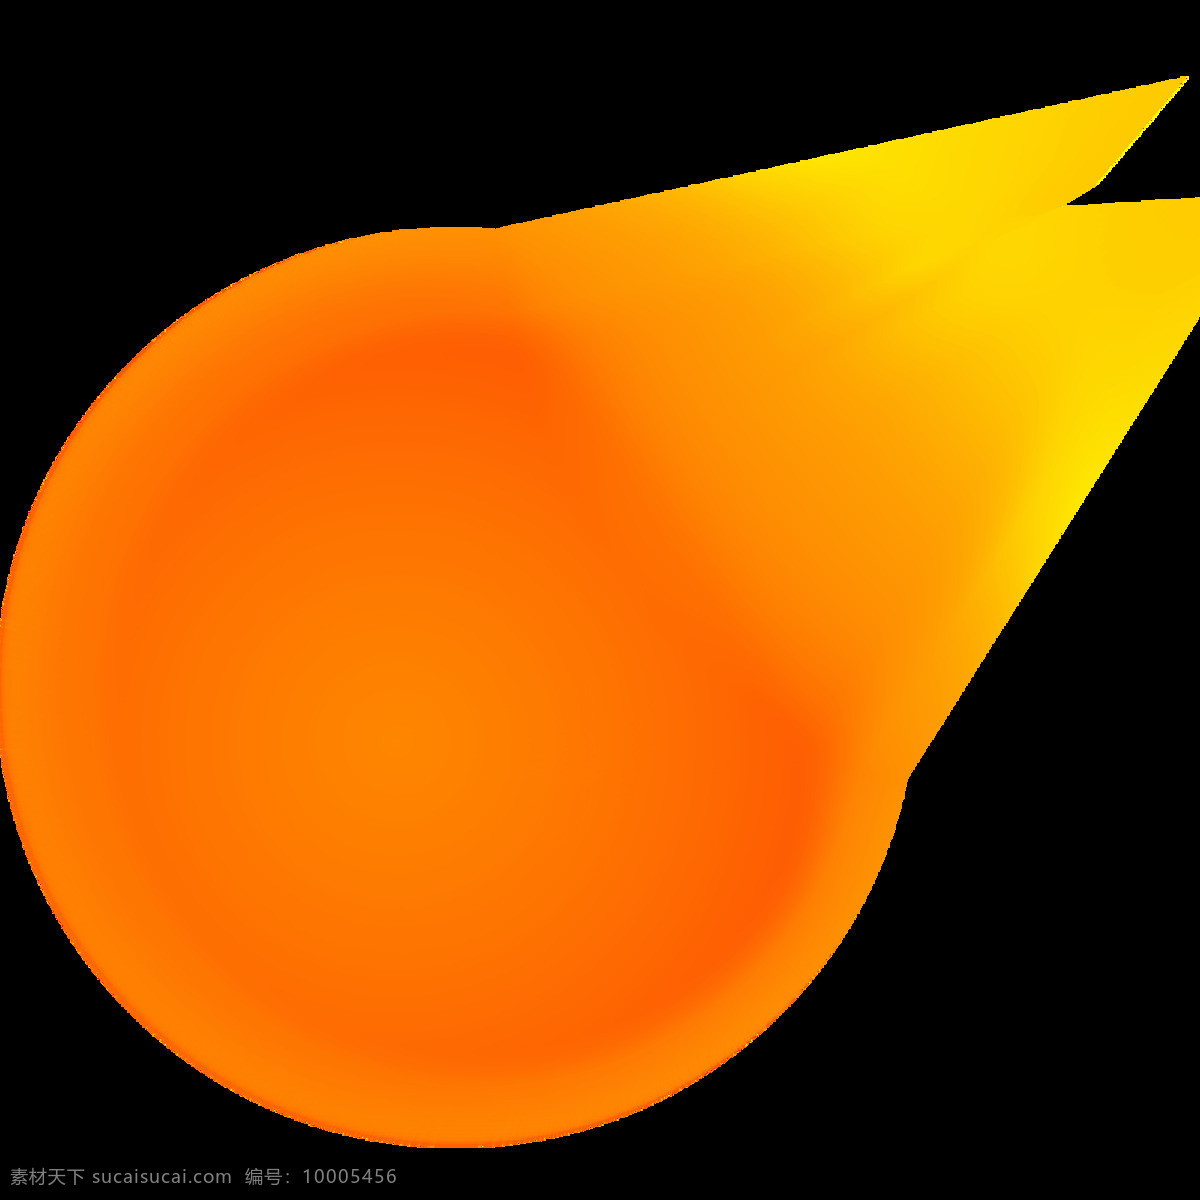 橙色 漂亮 火球 免 抠 透明 橙色漂亮火球 火球图 火球烈焰 大火图片 火球透明素材 火球特效 火球素材